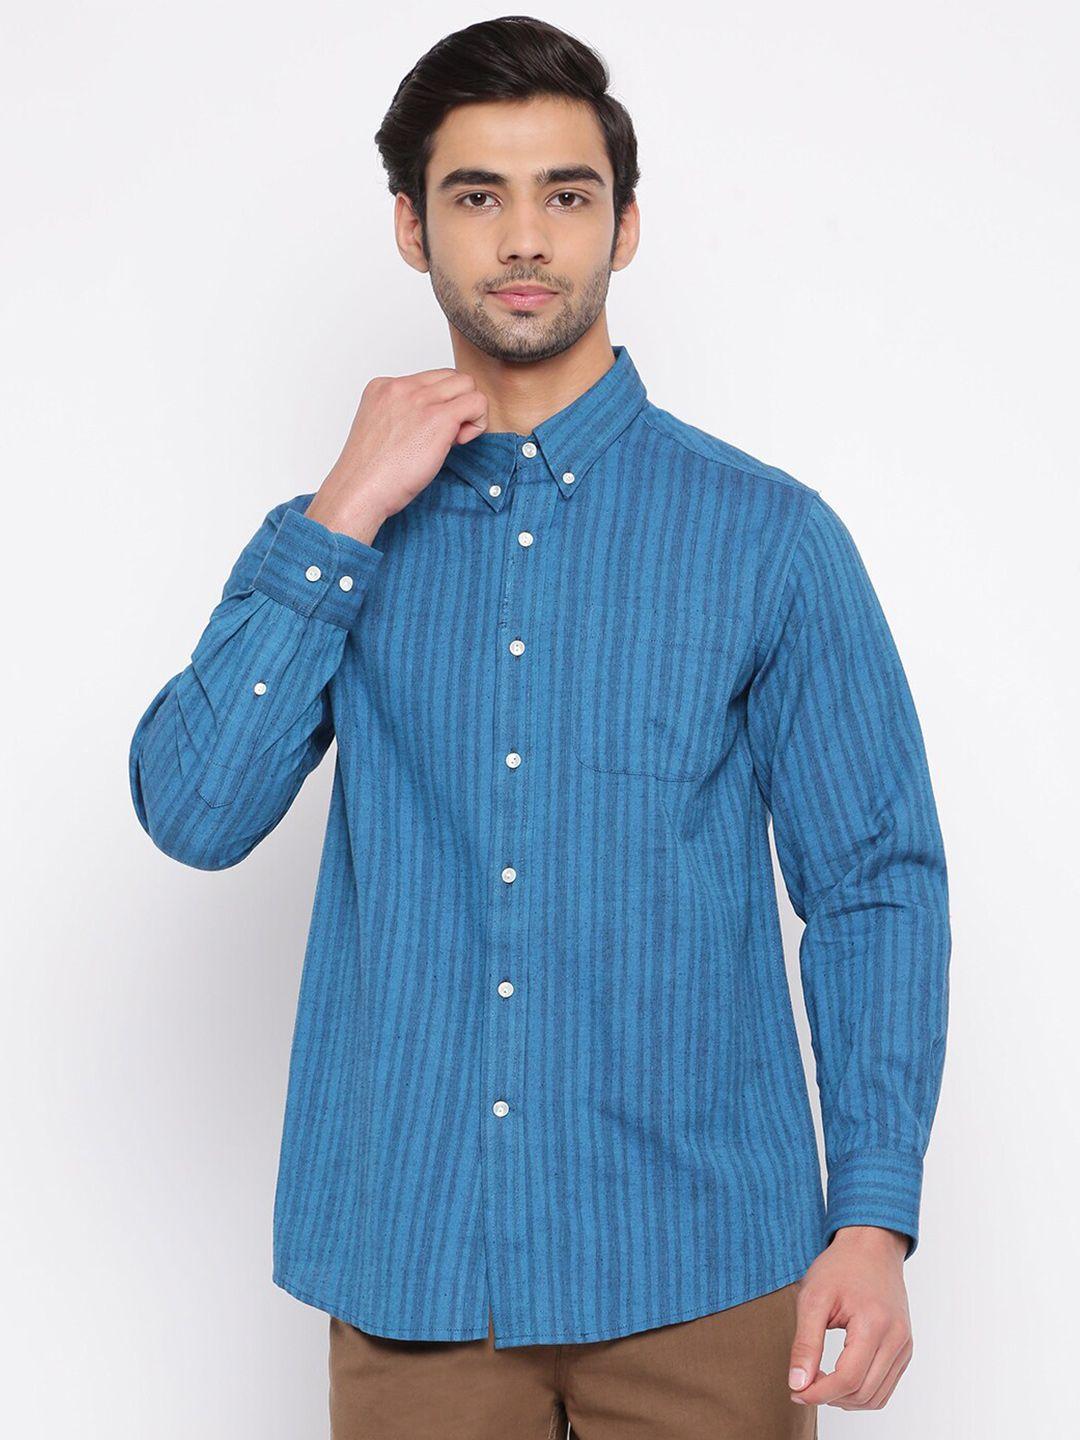 fabindia men blue striped casual shirt